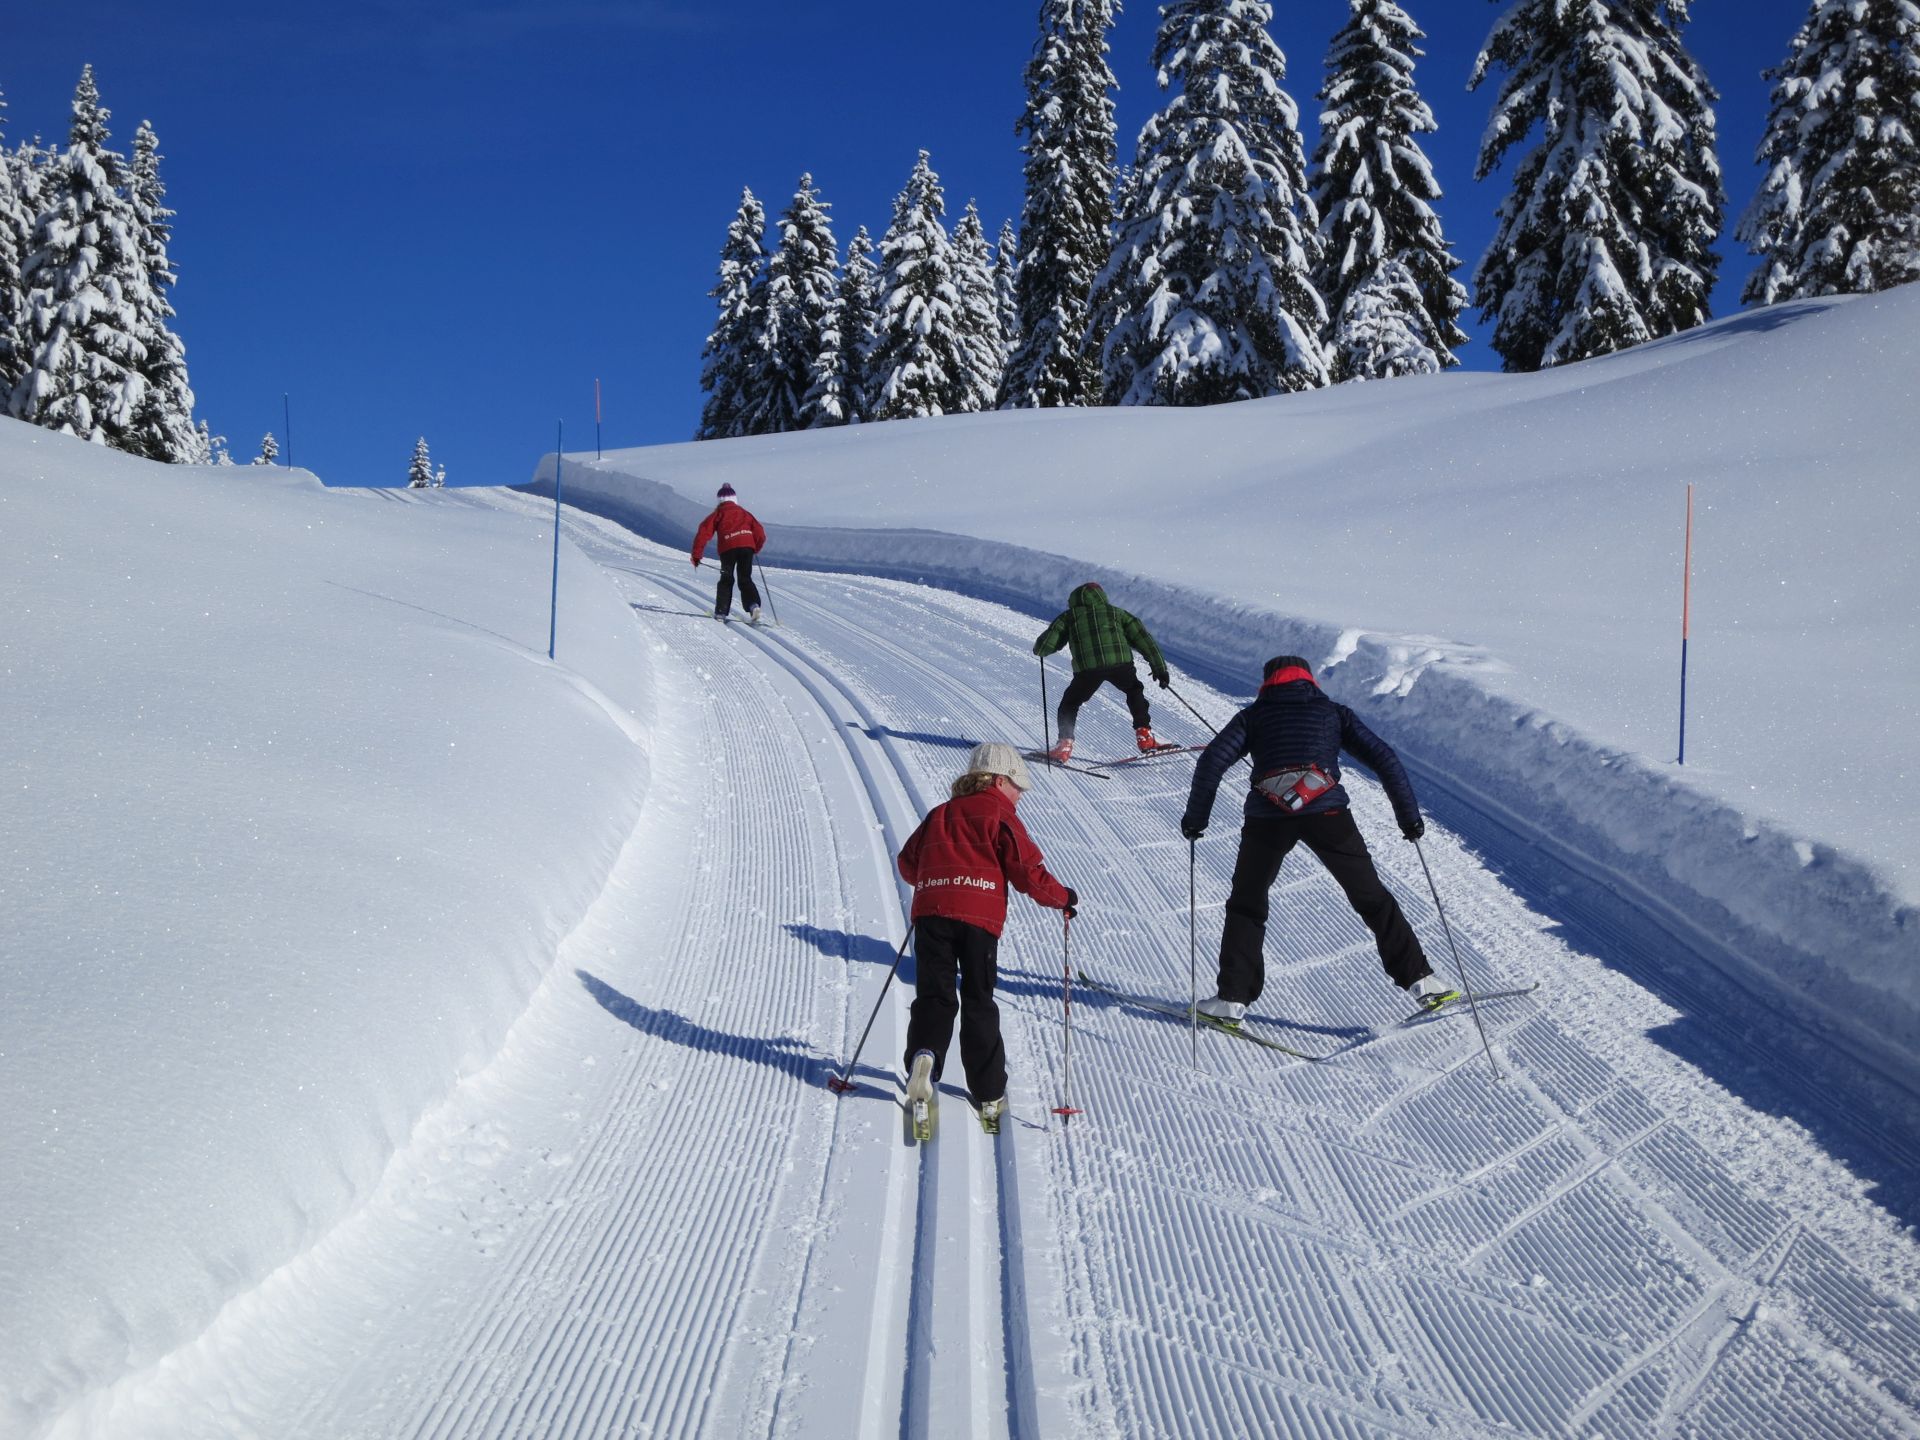 ski de fond Archives - The Alpine Property Blog